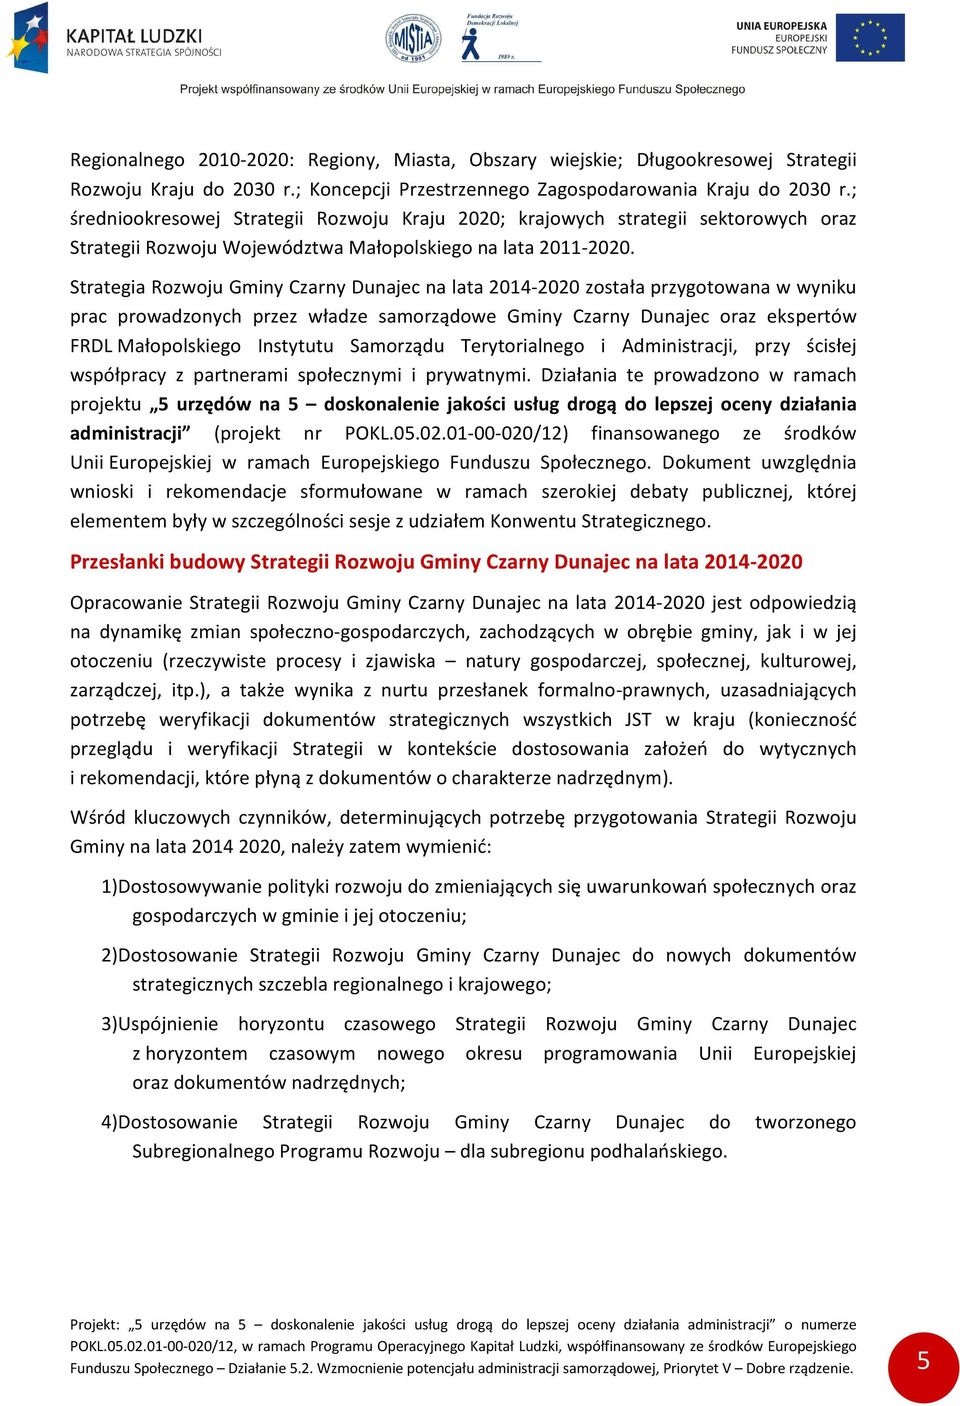 Strategia Rozwoju Gminy Czarny Dunajec na lata 2014-2020 została przygotowana w wyniku prac prowadzonych przez władze samorządowe Gminy Czarny Dunajec oraz ekspertów FRDL Małopolskiego Instytutu